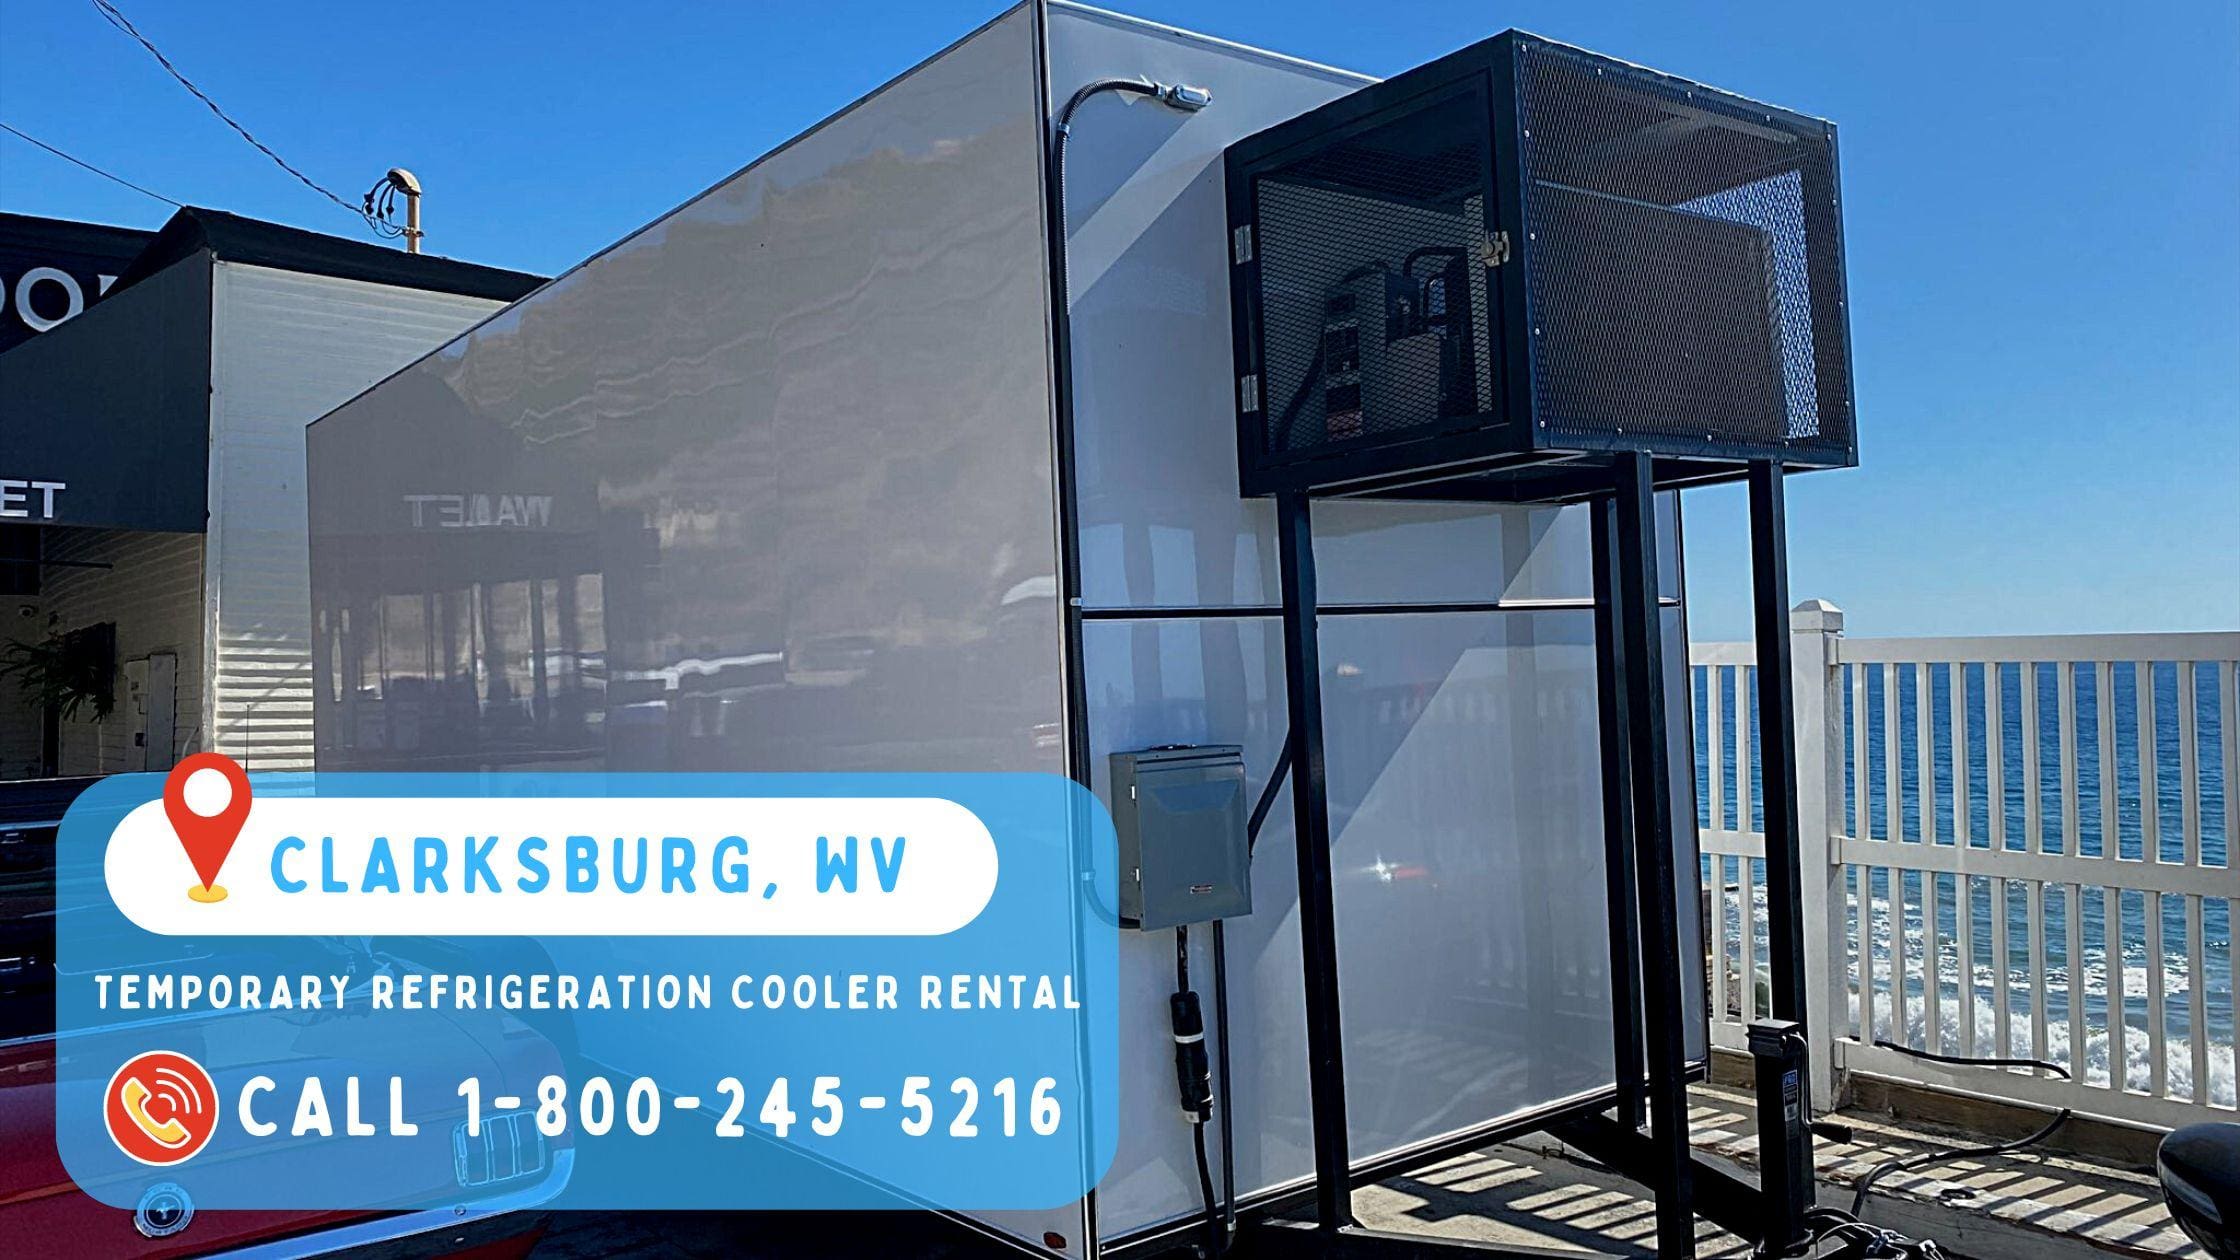 Temporary refrigeration cooler rental in Clarksburg, WV